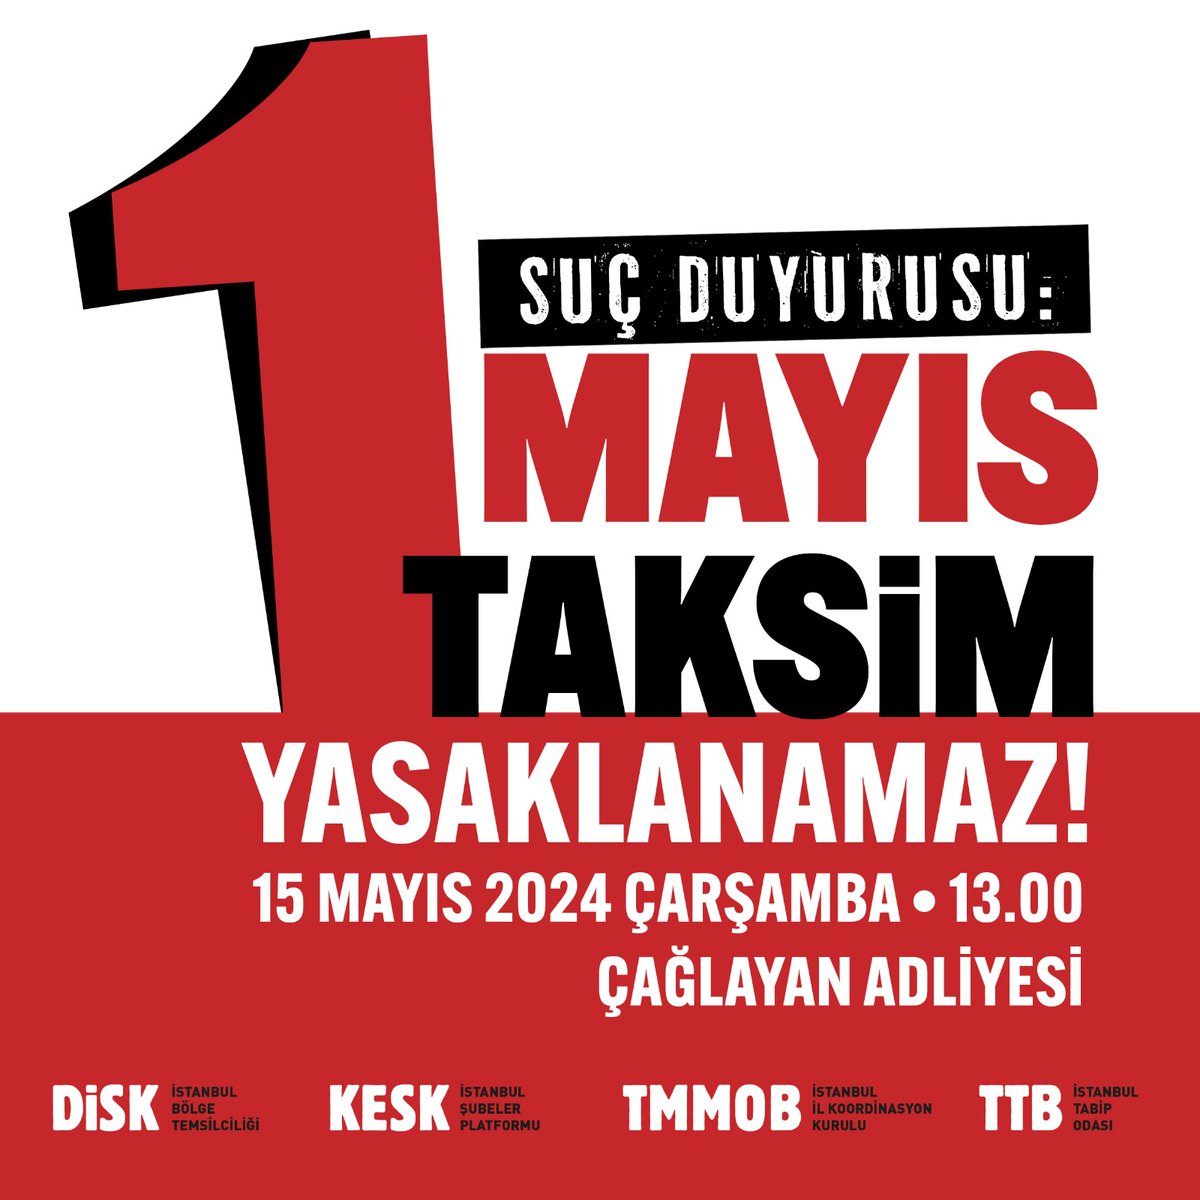 Anayasa Mahkemesi'nin kararını hiçe sayarak 1 Mayıs'ın Taksim'de kutlanmasını engelleyenler hakkında suç duyurusunda bulunuyoruz. 📢Taksim 1 Mayıs Alanıdır, Yasaklanamaz! 🗓️15 Mayıs, Çarşamba ⏰13.00 📍Çağlayan Adliyesi